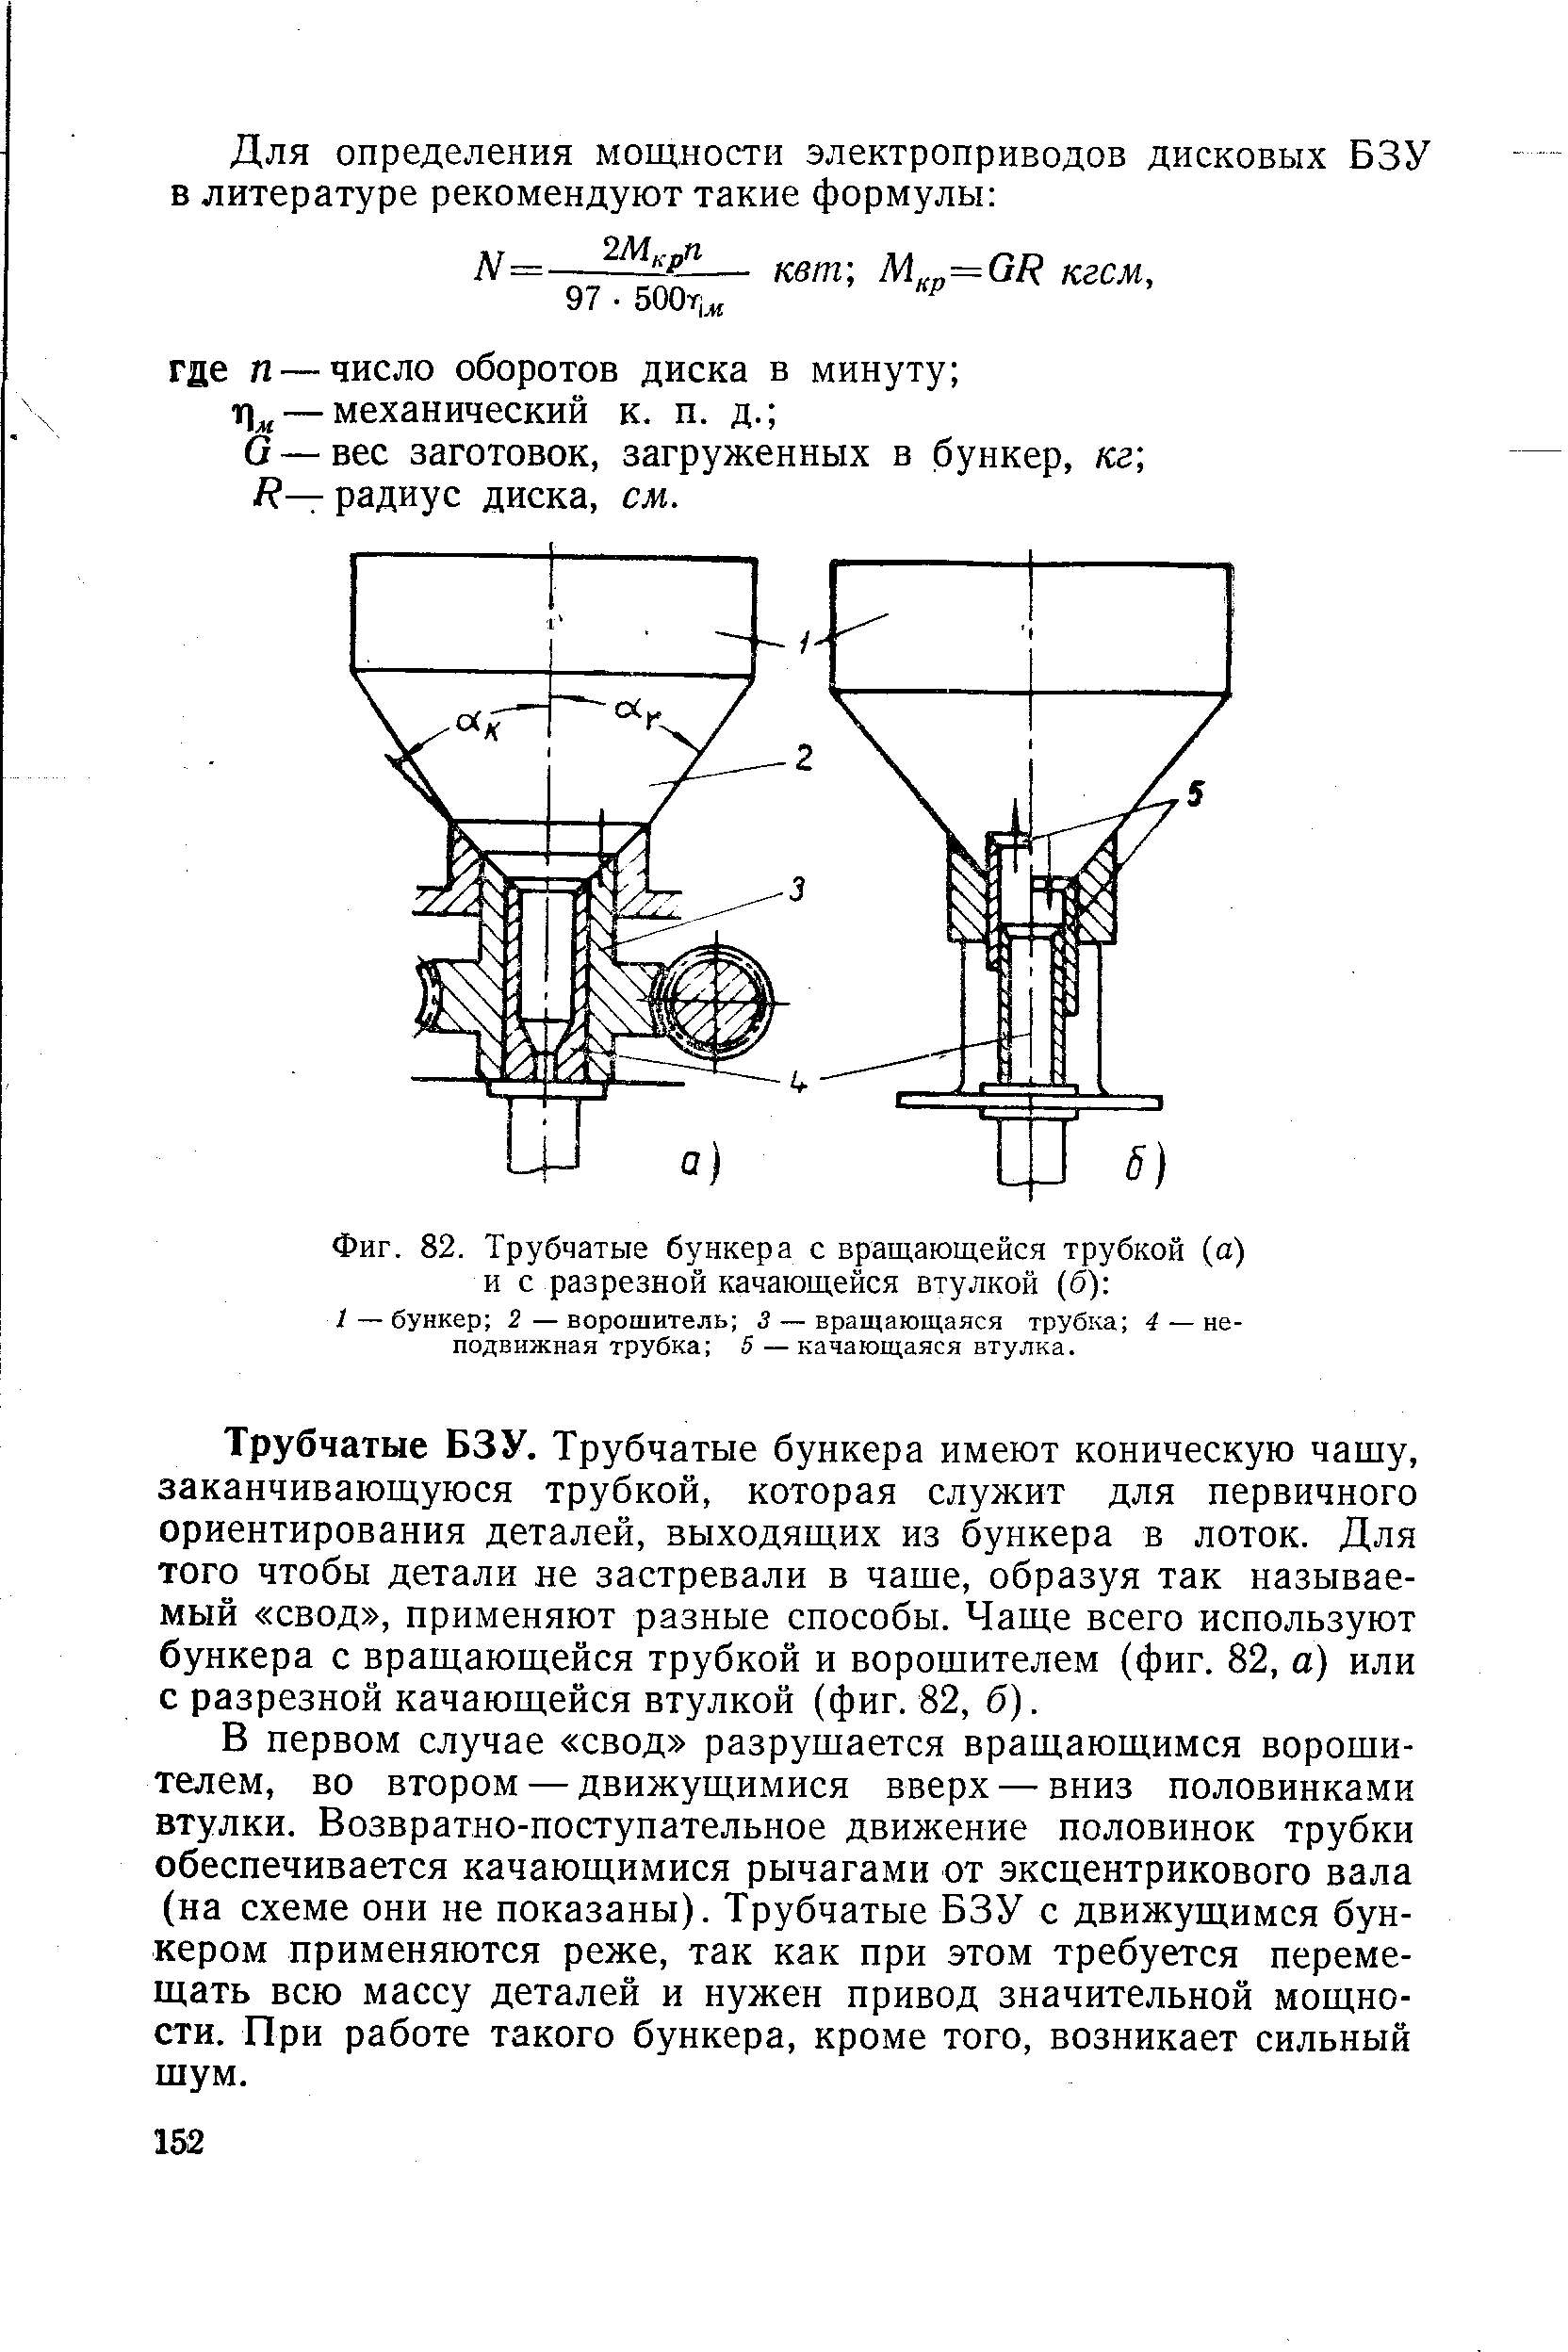 Фиг. 82. Трубчатые бункера с вращающейся трубкой (а) и с разрезной качающейся втулкой (б) 
